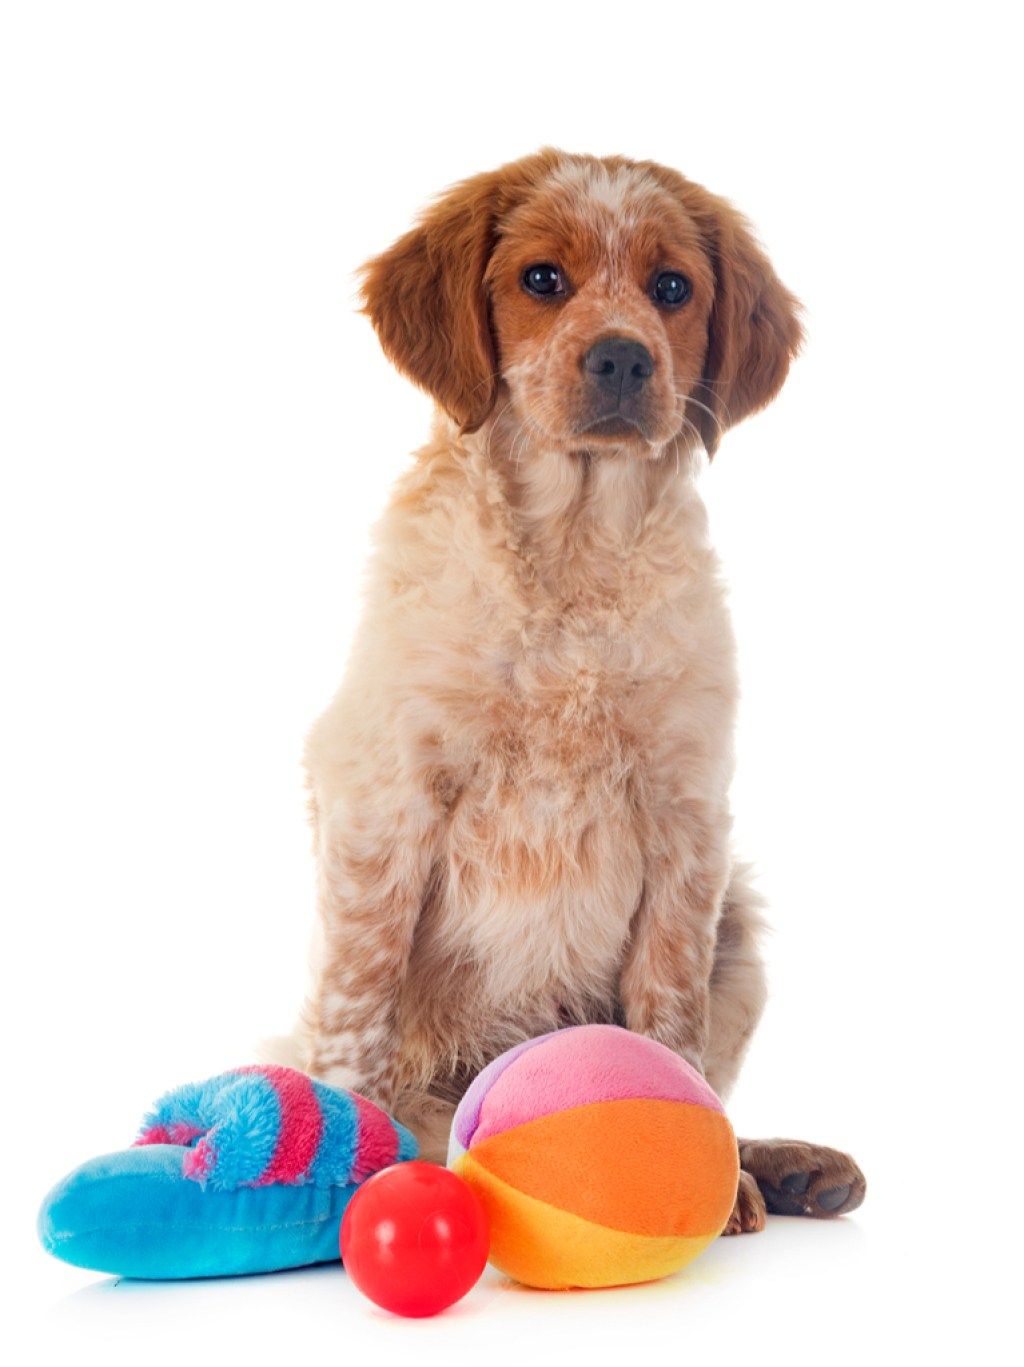 पालतू खिलौनों की चीजों के साथ कुत्ता जिसे आप कभी नहीं जानते थे कि कुत्ते कर सकते हैं